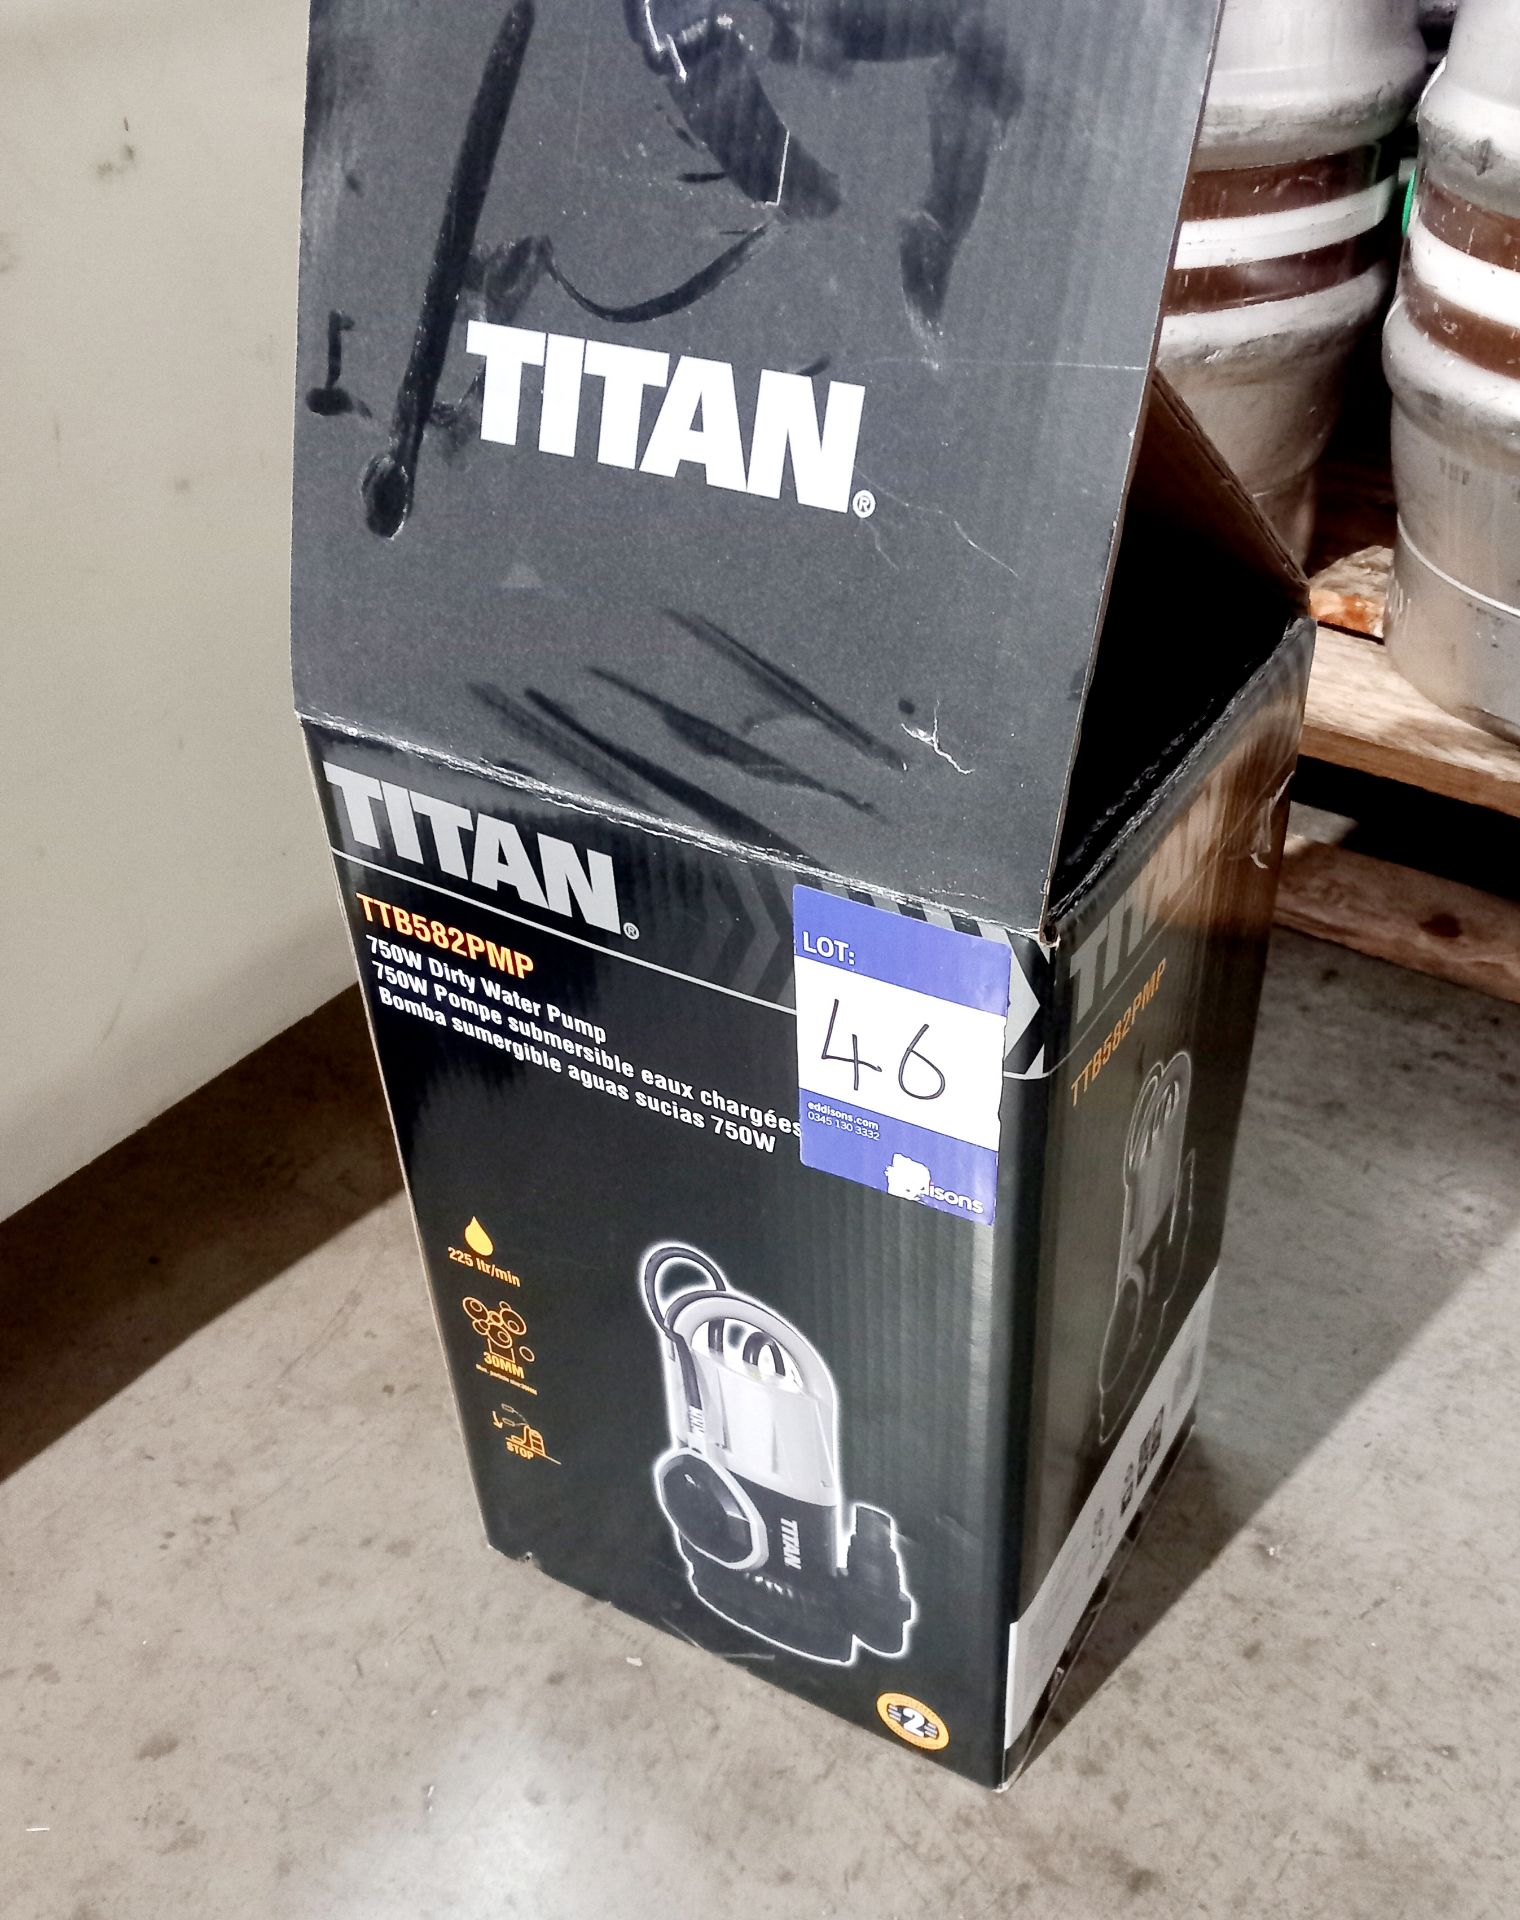 Titan 750w water pump